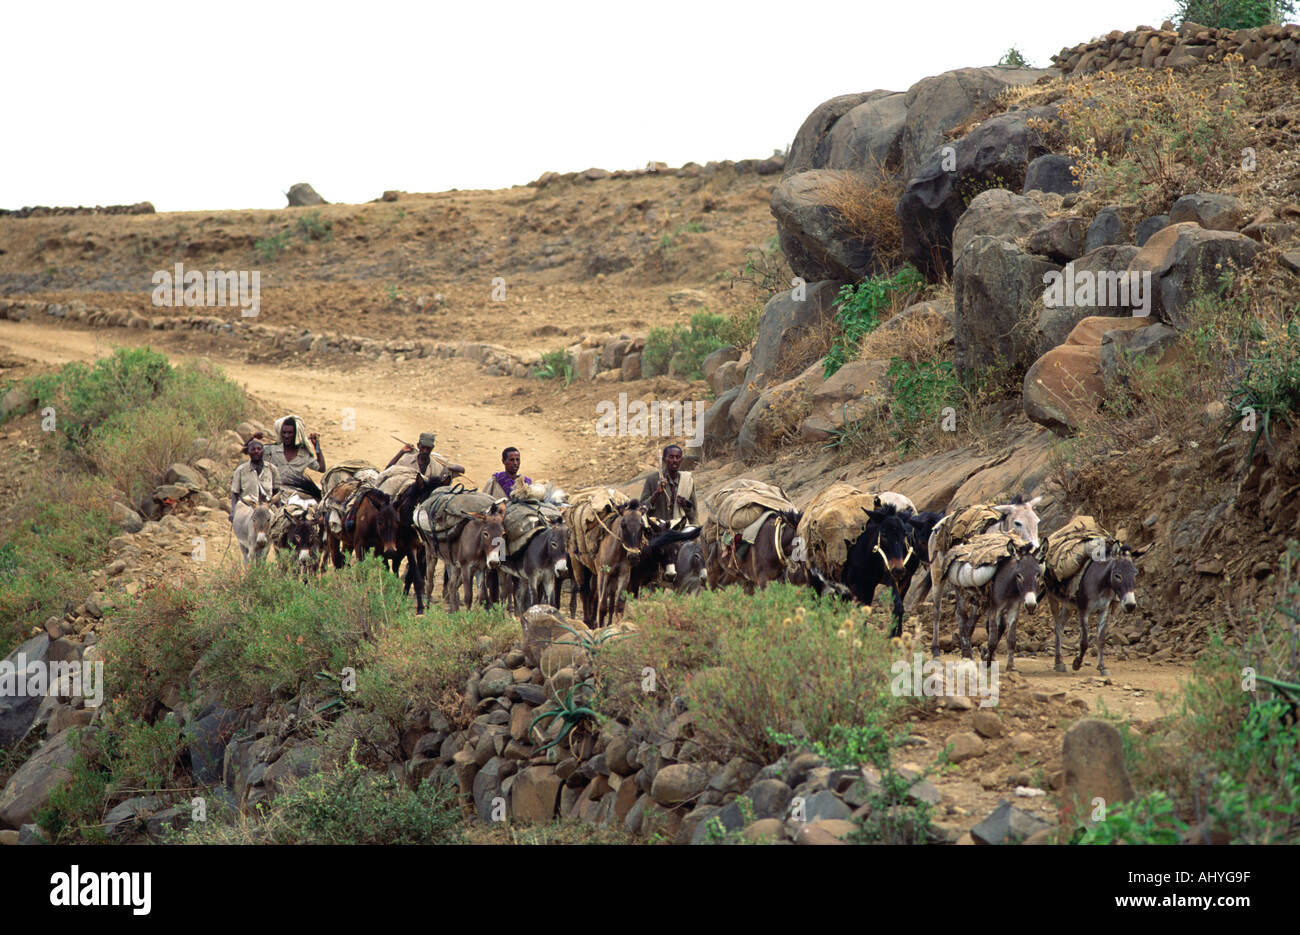 Des compatriotes éthiopiens rentrent du marché avec leurs ânes chargés de nourriture et de fournitures, près de Mekelle, Tigray, dans le nord de l'Éthiopie Banque D'Images